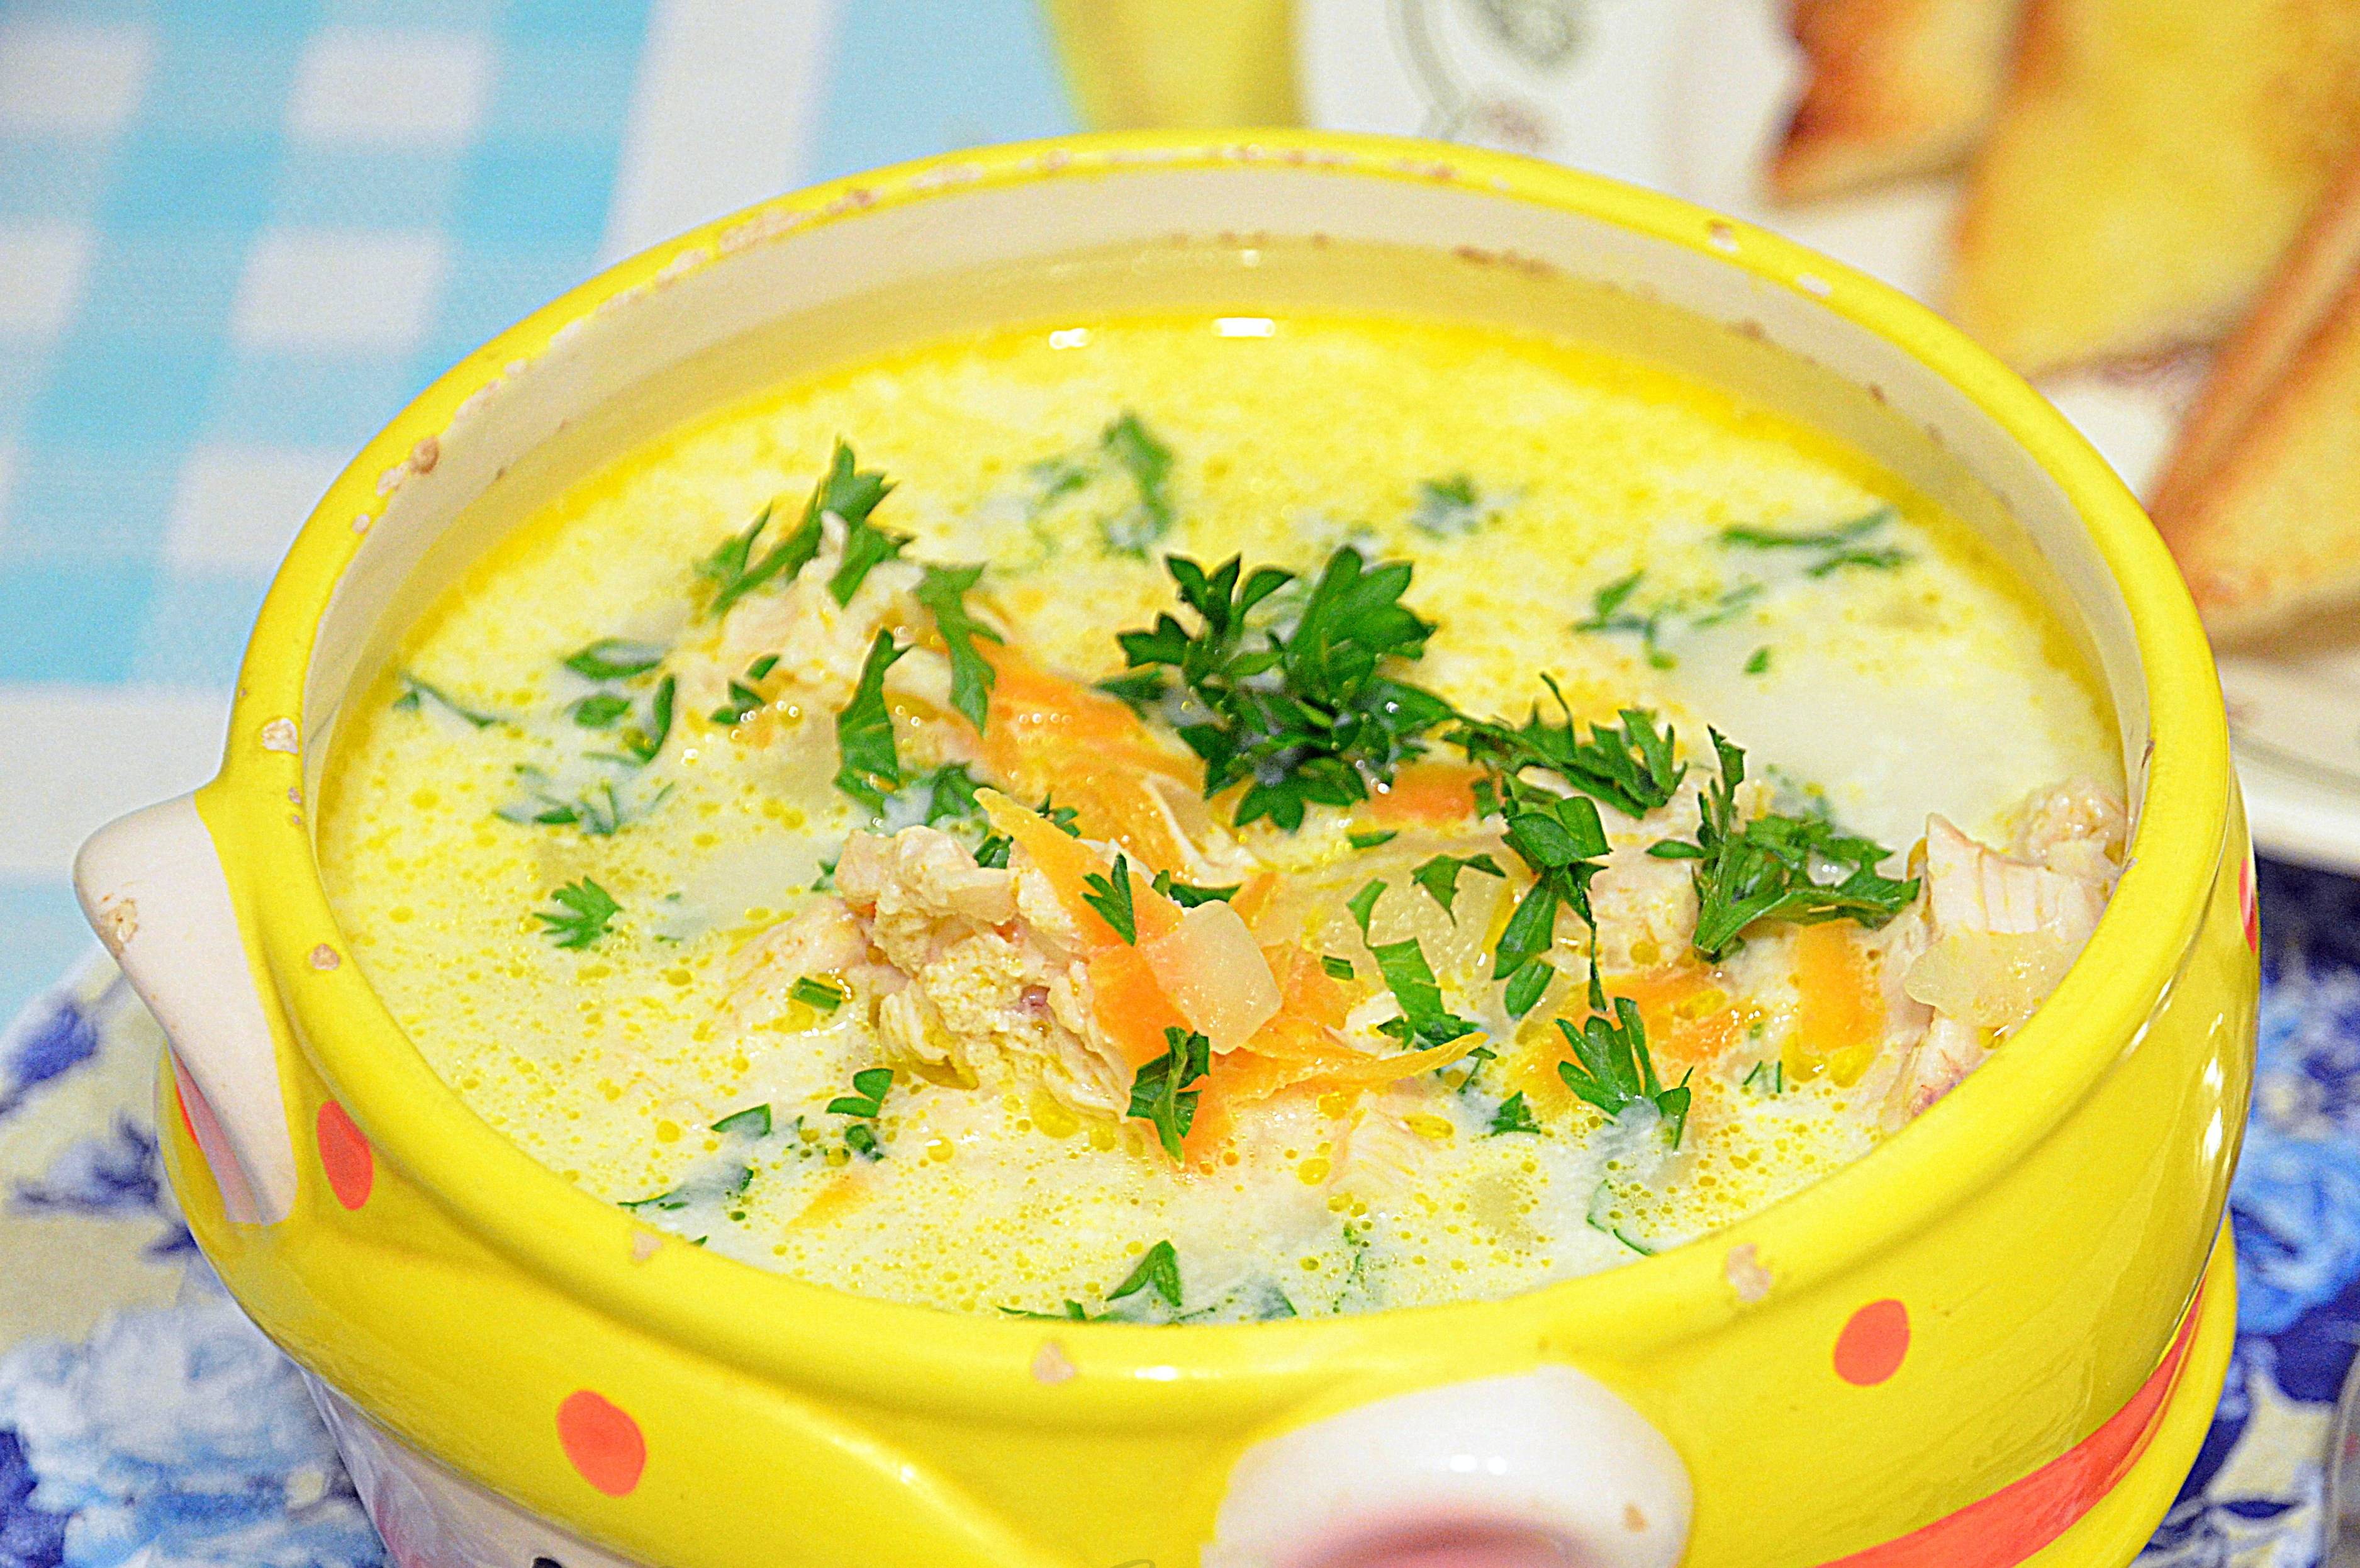 Суп с плавленным сыром - 73 домашних вкусных рецепта приготовления